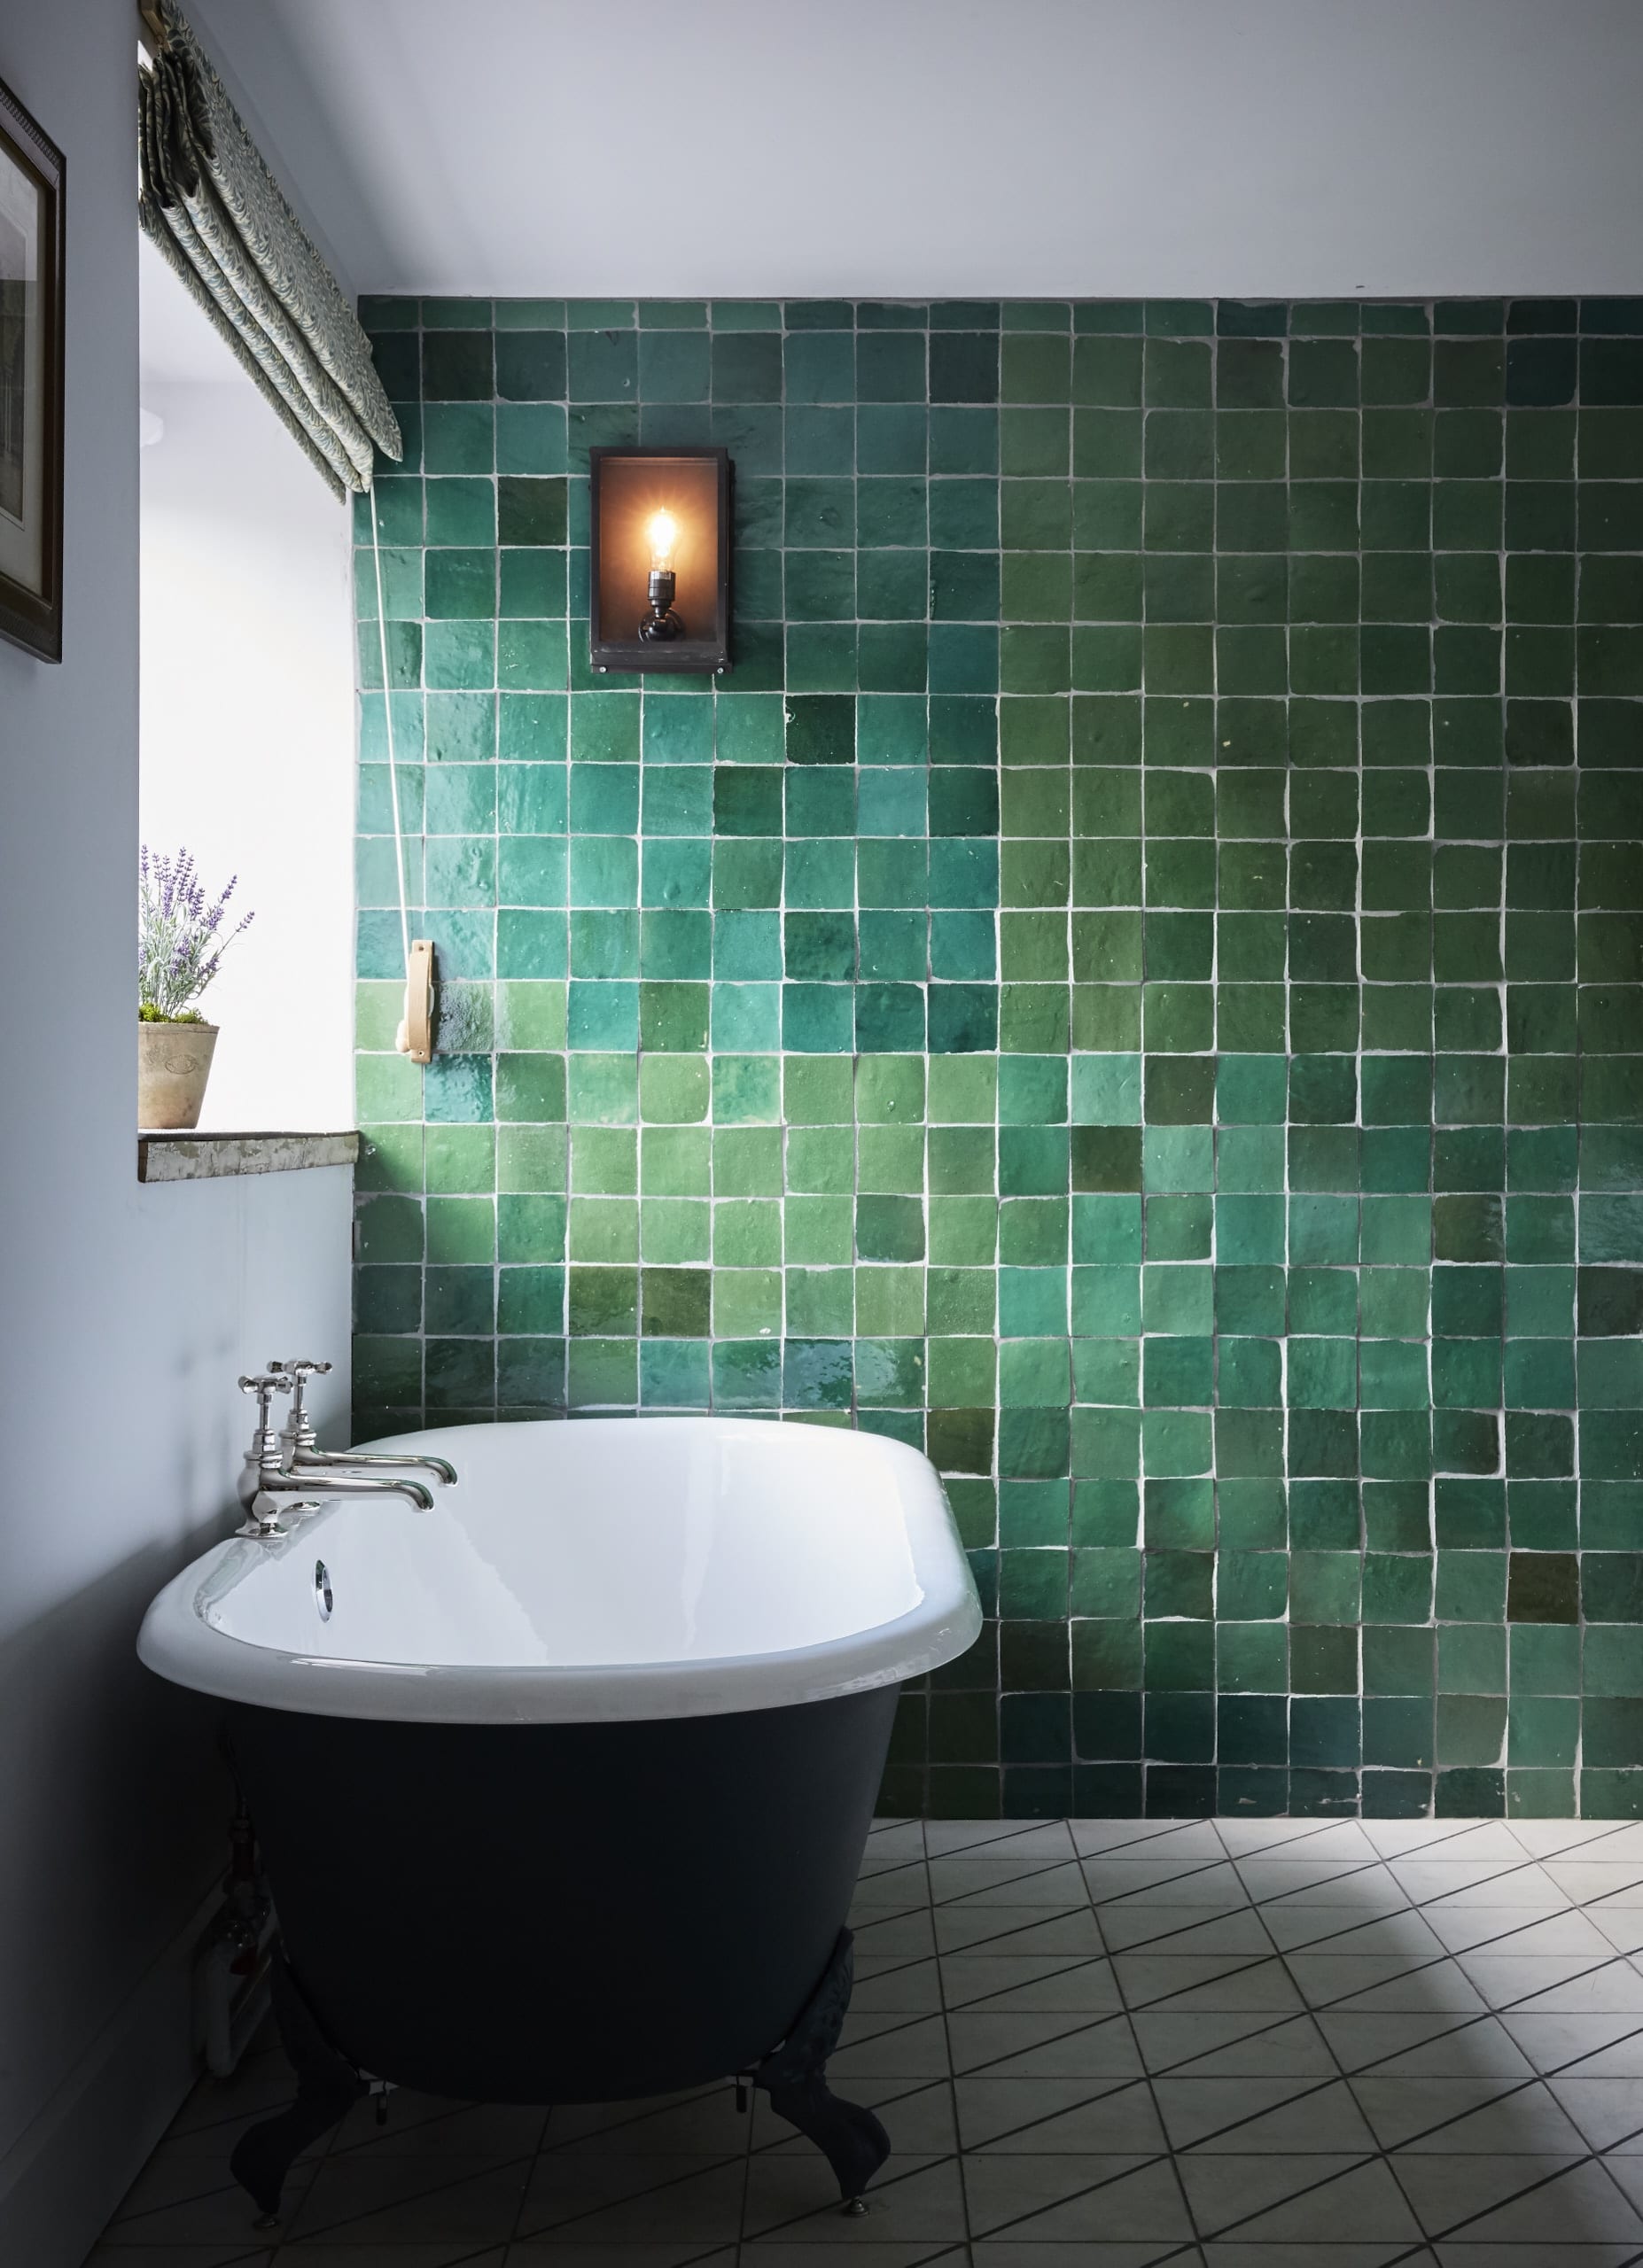 salle de bain avec zelliges vertes